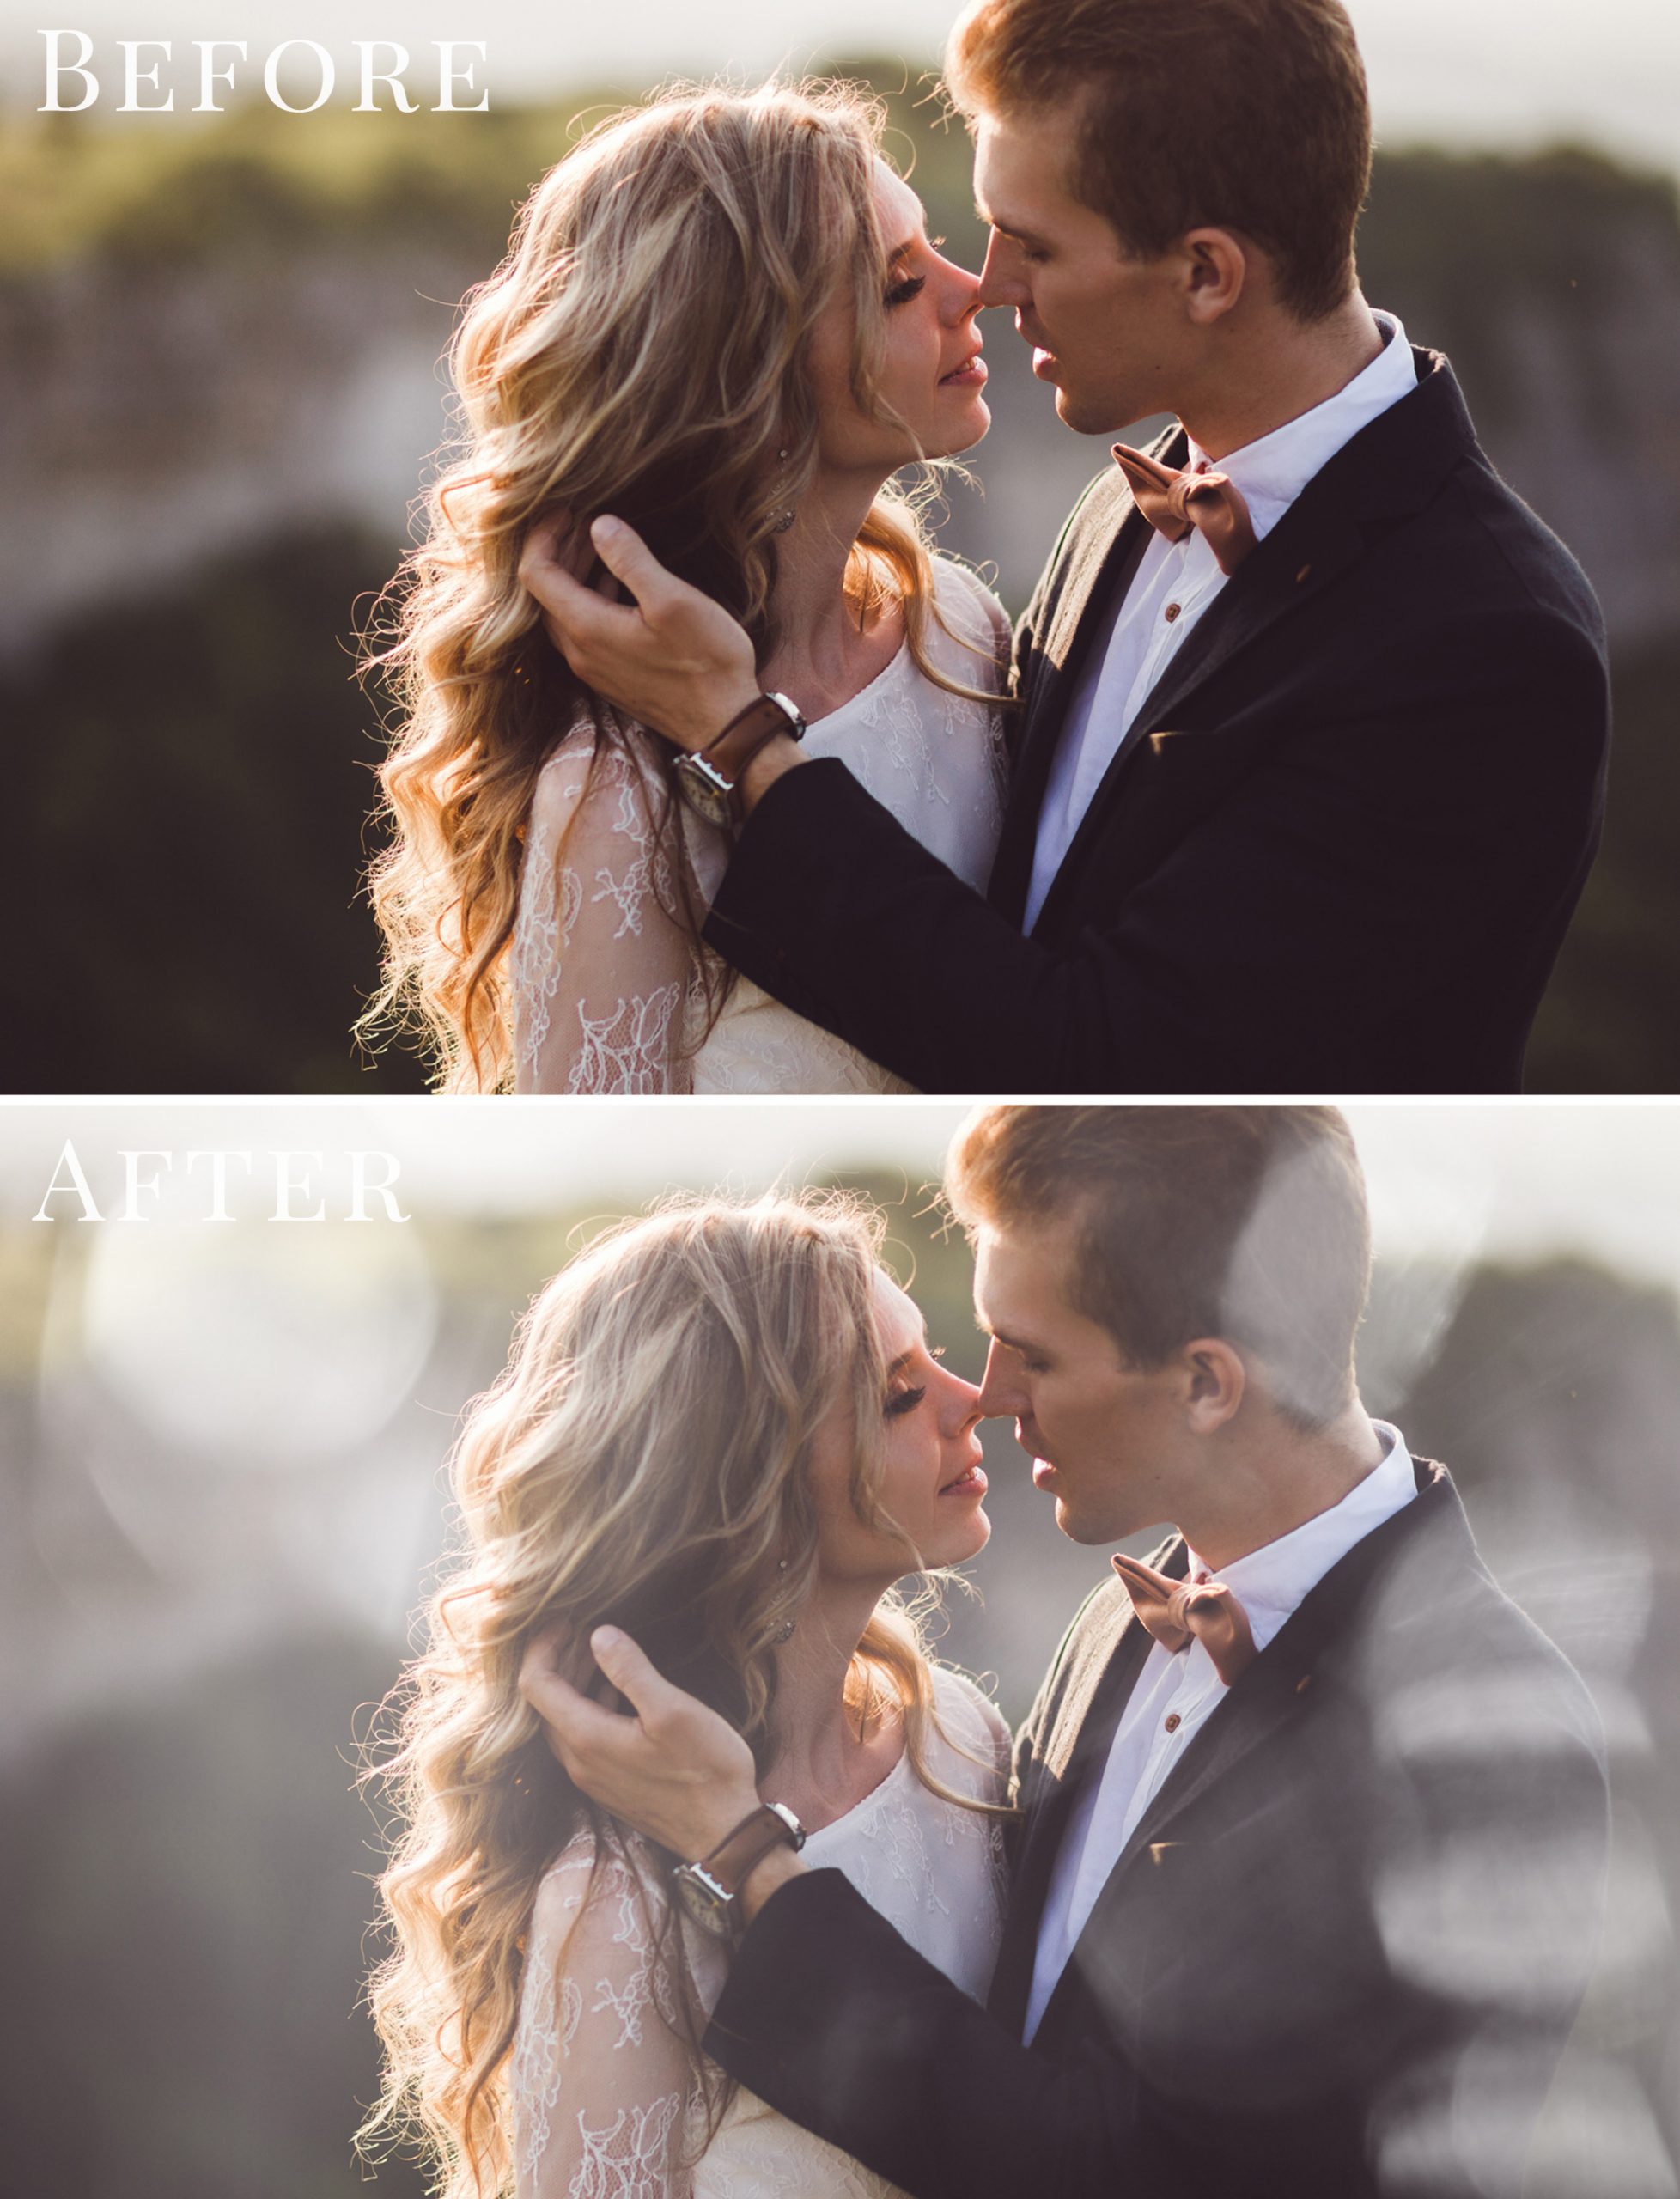 wedding lights photo overlays